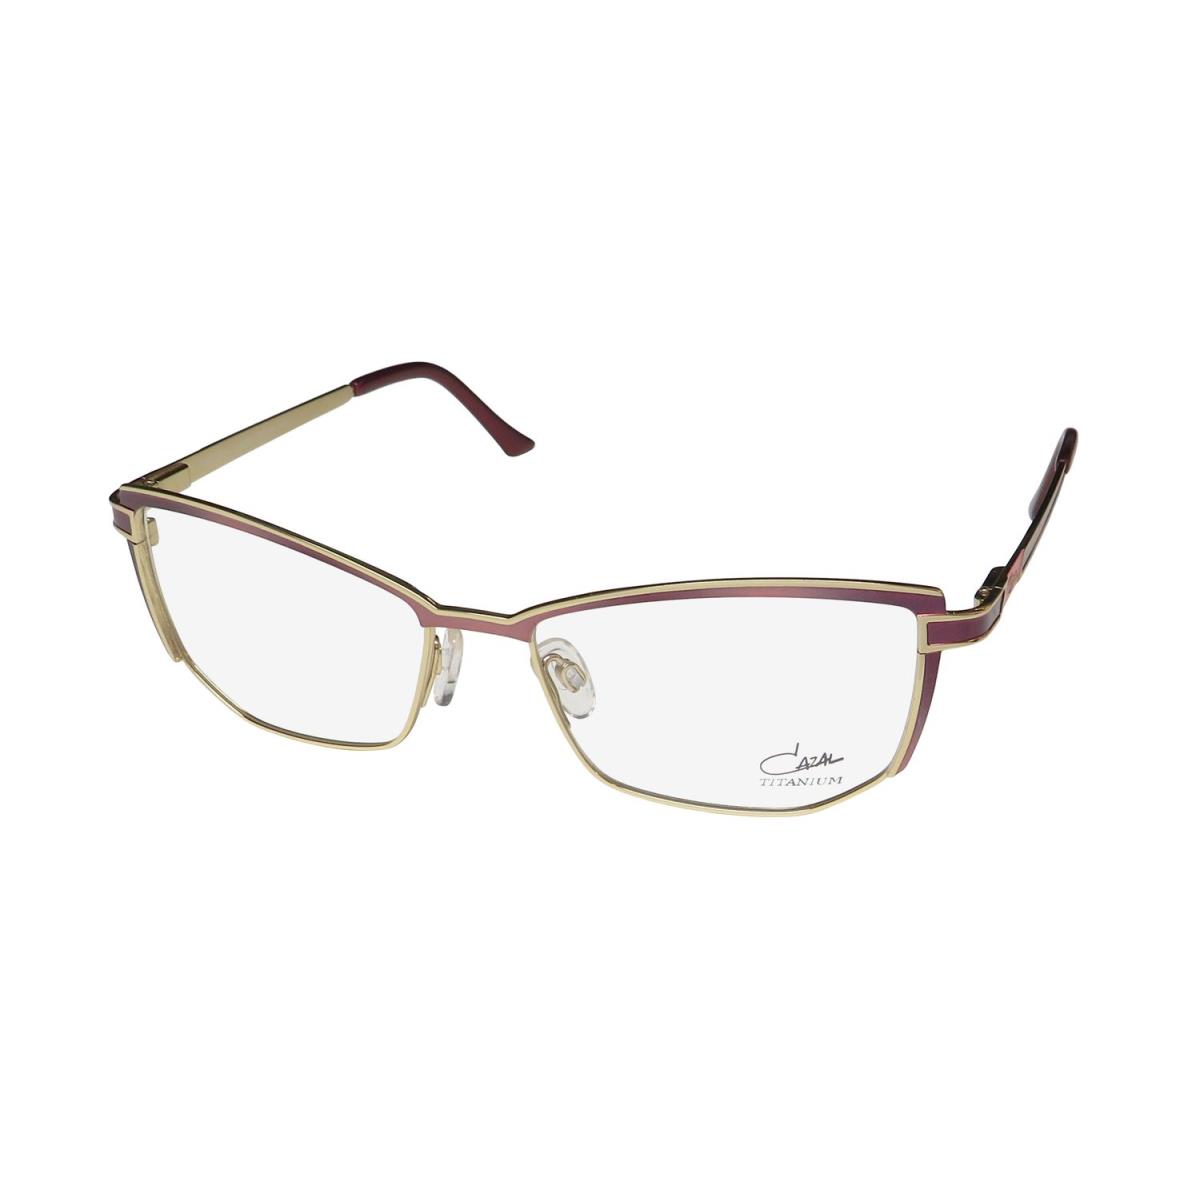 Cazal 4280 Cat Eye Titanium Full-rim German Hot Eyeglass Frame/glasses Bordeaux / Gold